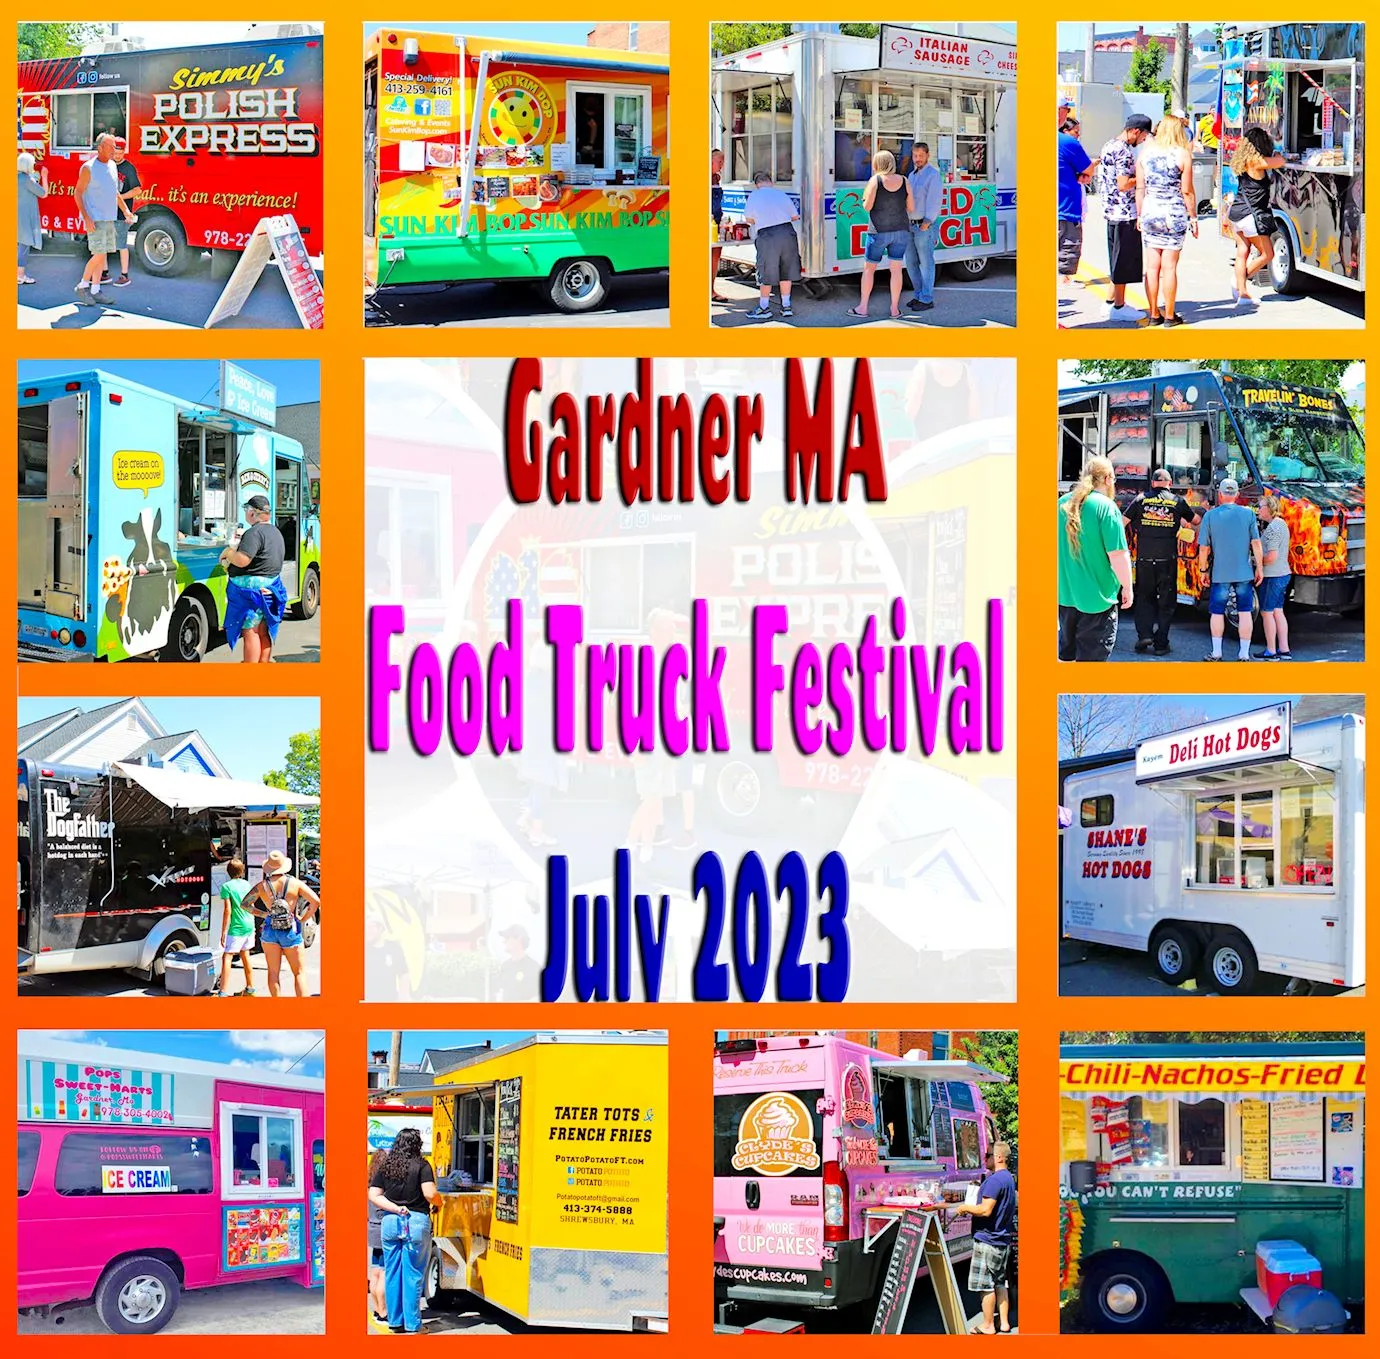 Gardner Food Truck Festival